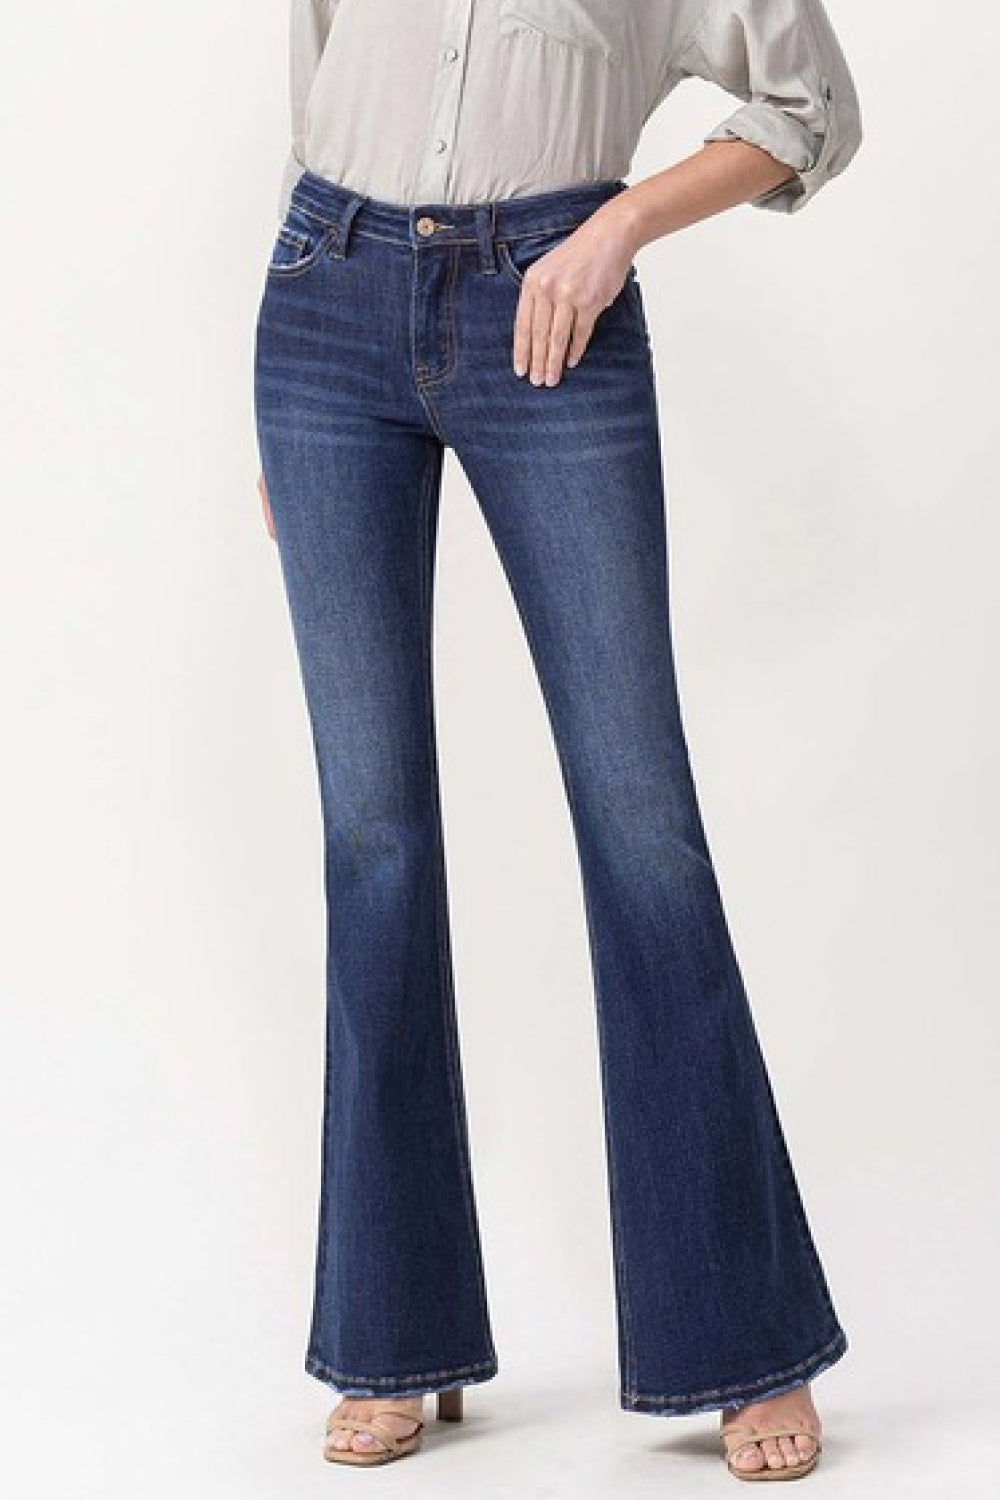 Lovervet by VERVET Full Size Joanna Midrise Flare Jeans